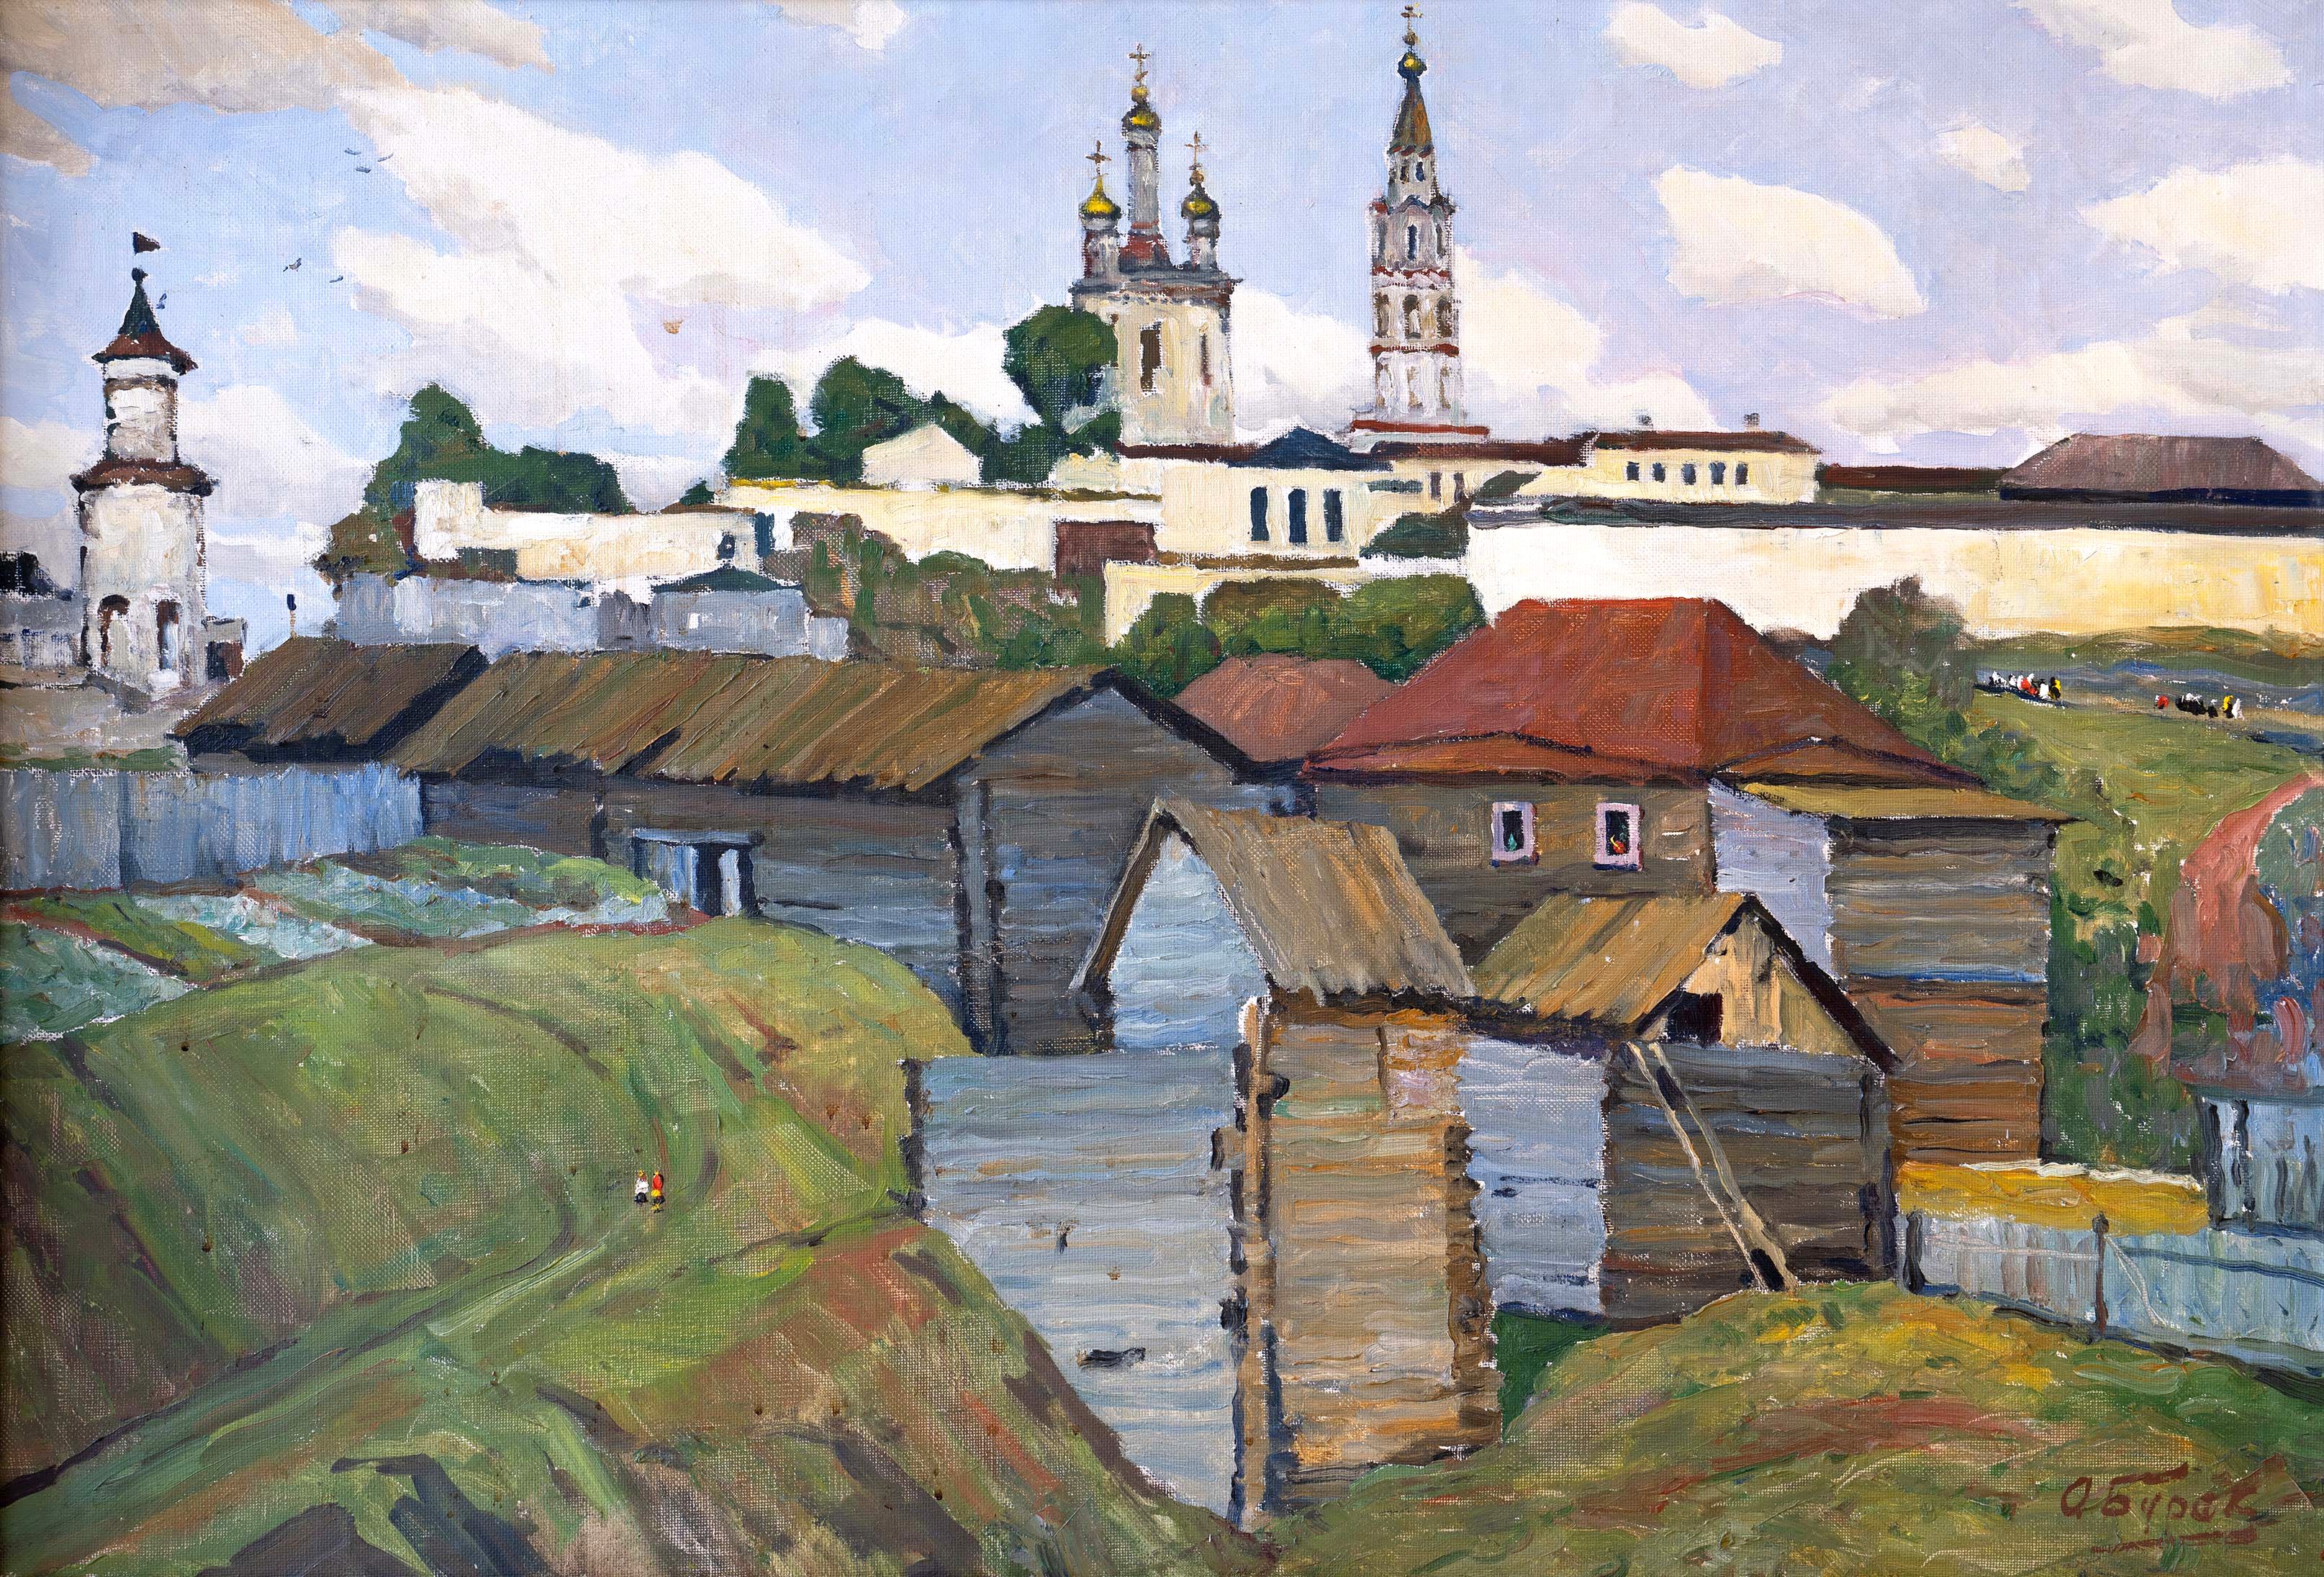 Verkhoturye - 1, Alexander Burak, Buy the painting Oil